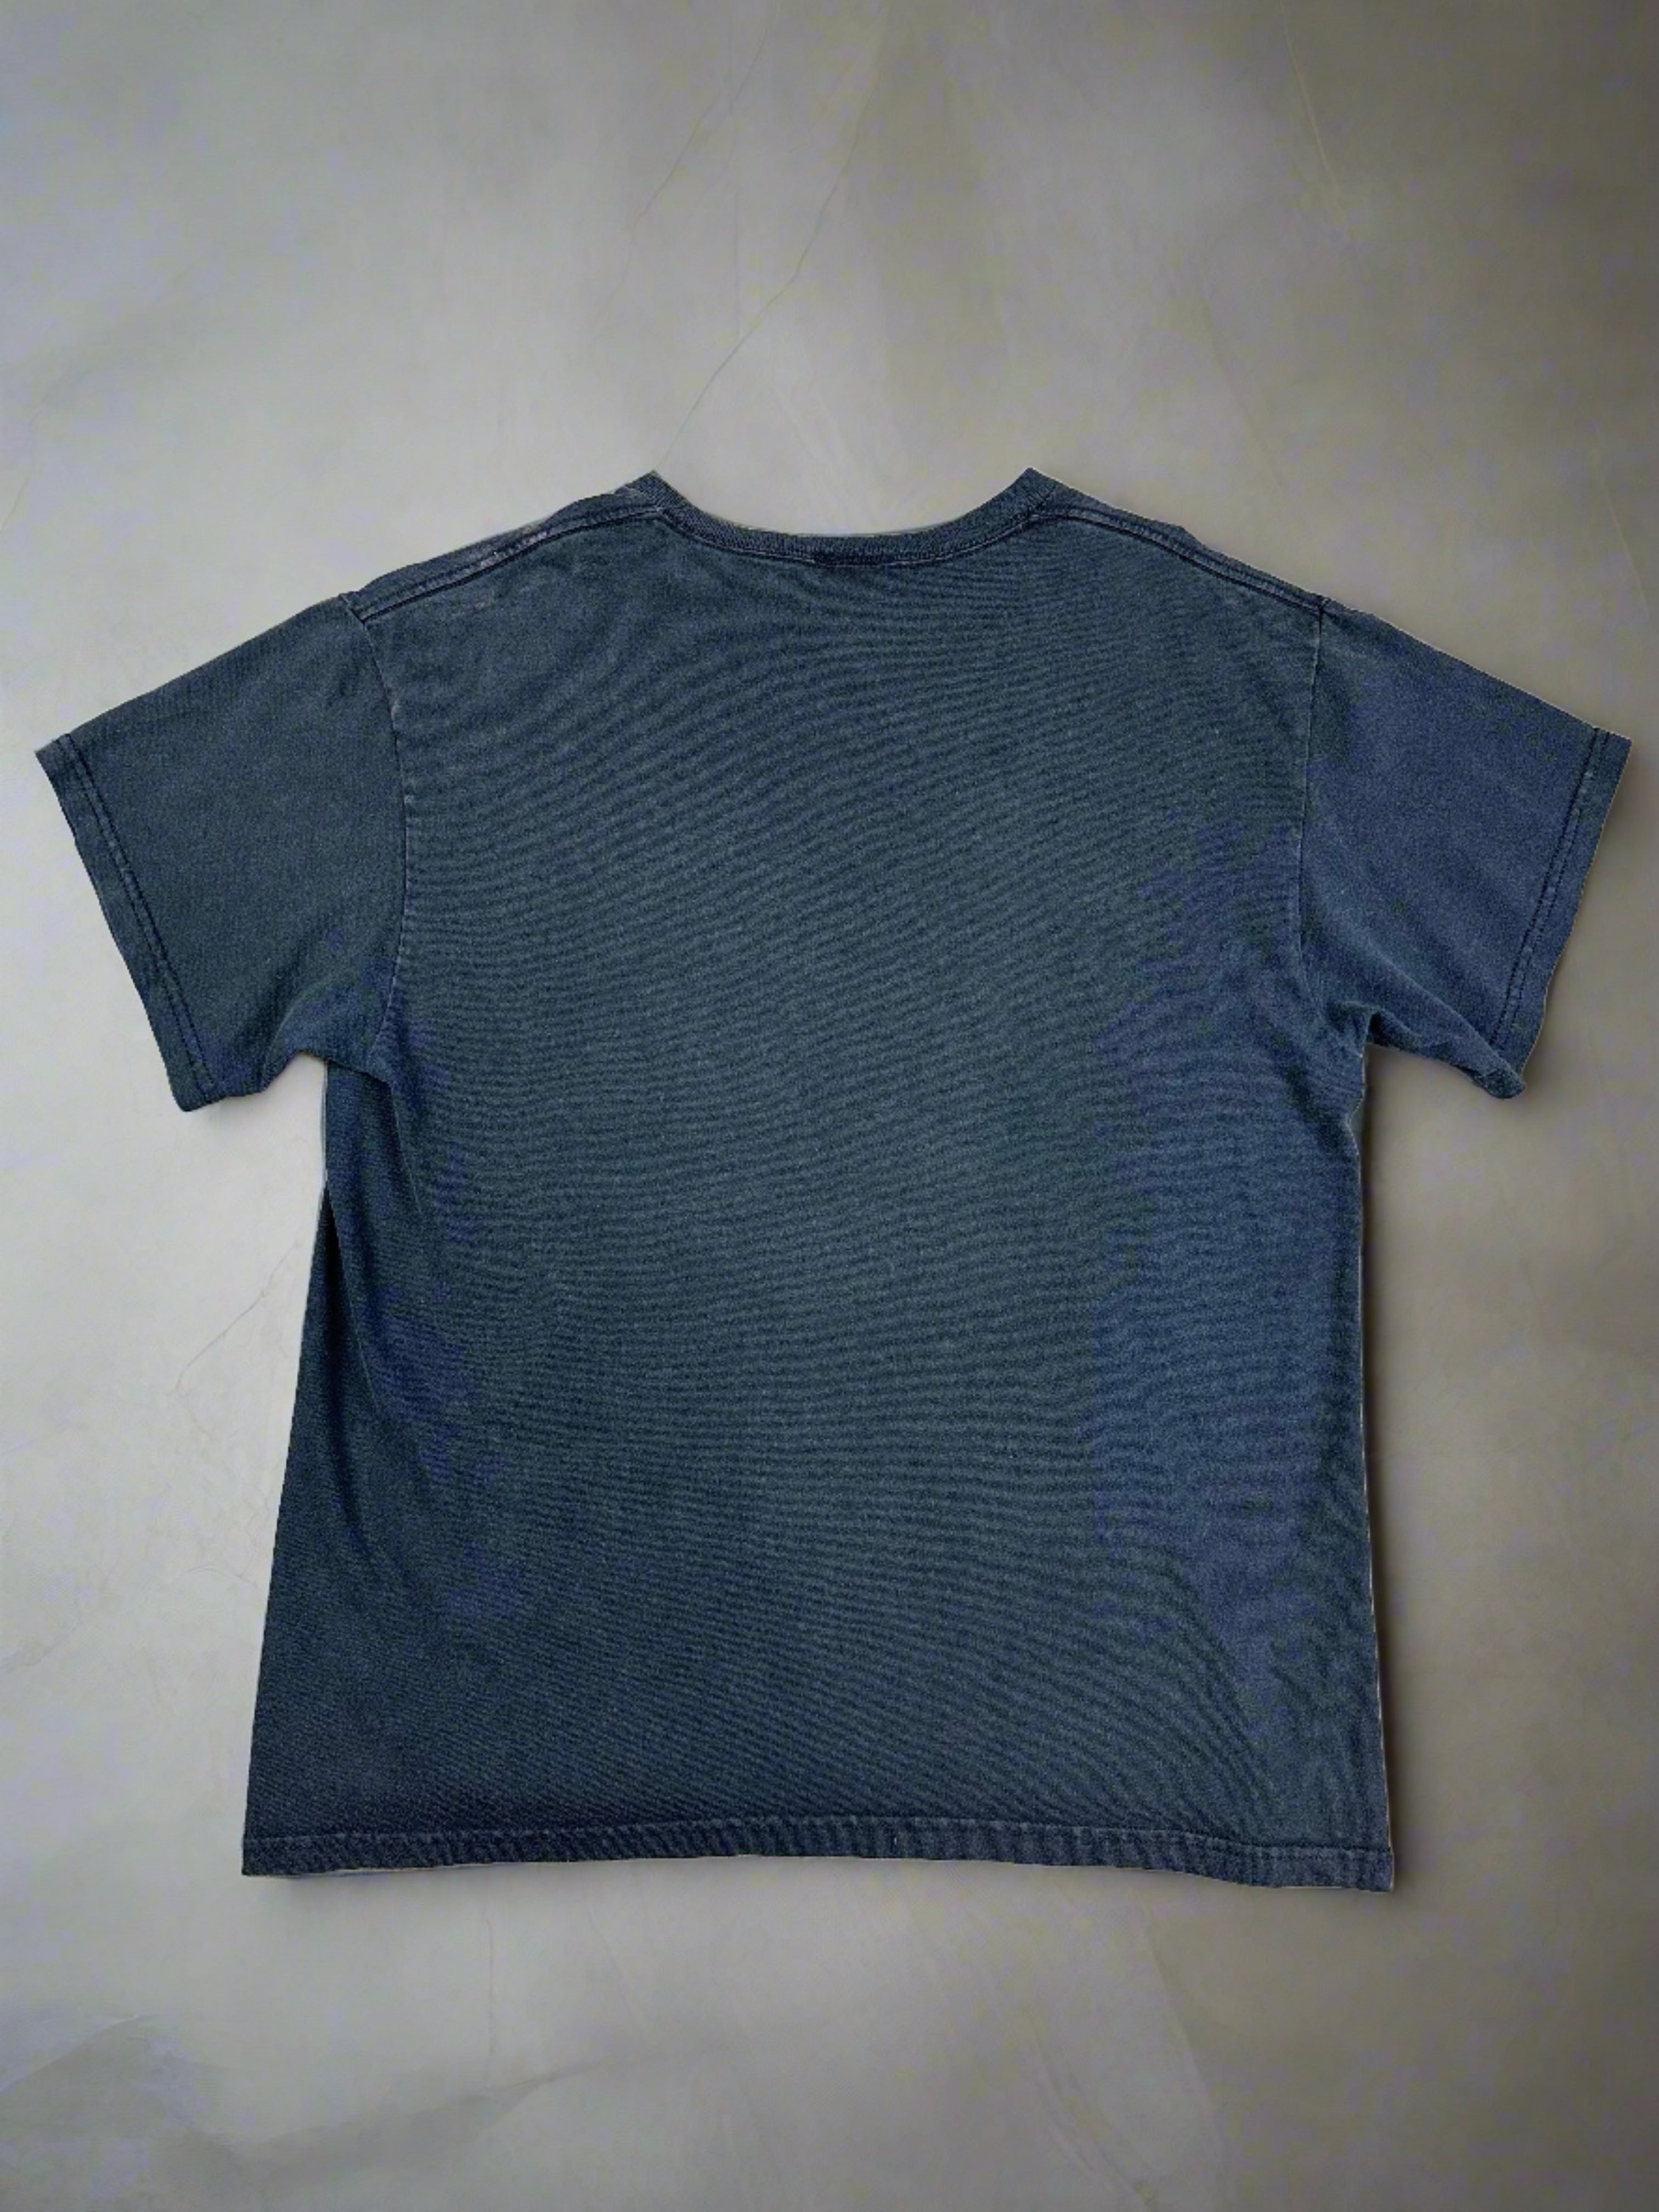 Vintage AC DC 2009 T-shirt - size M